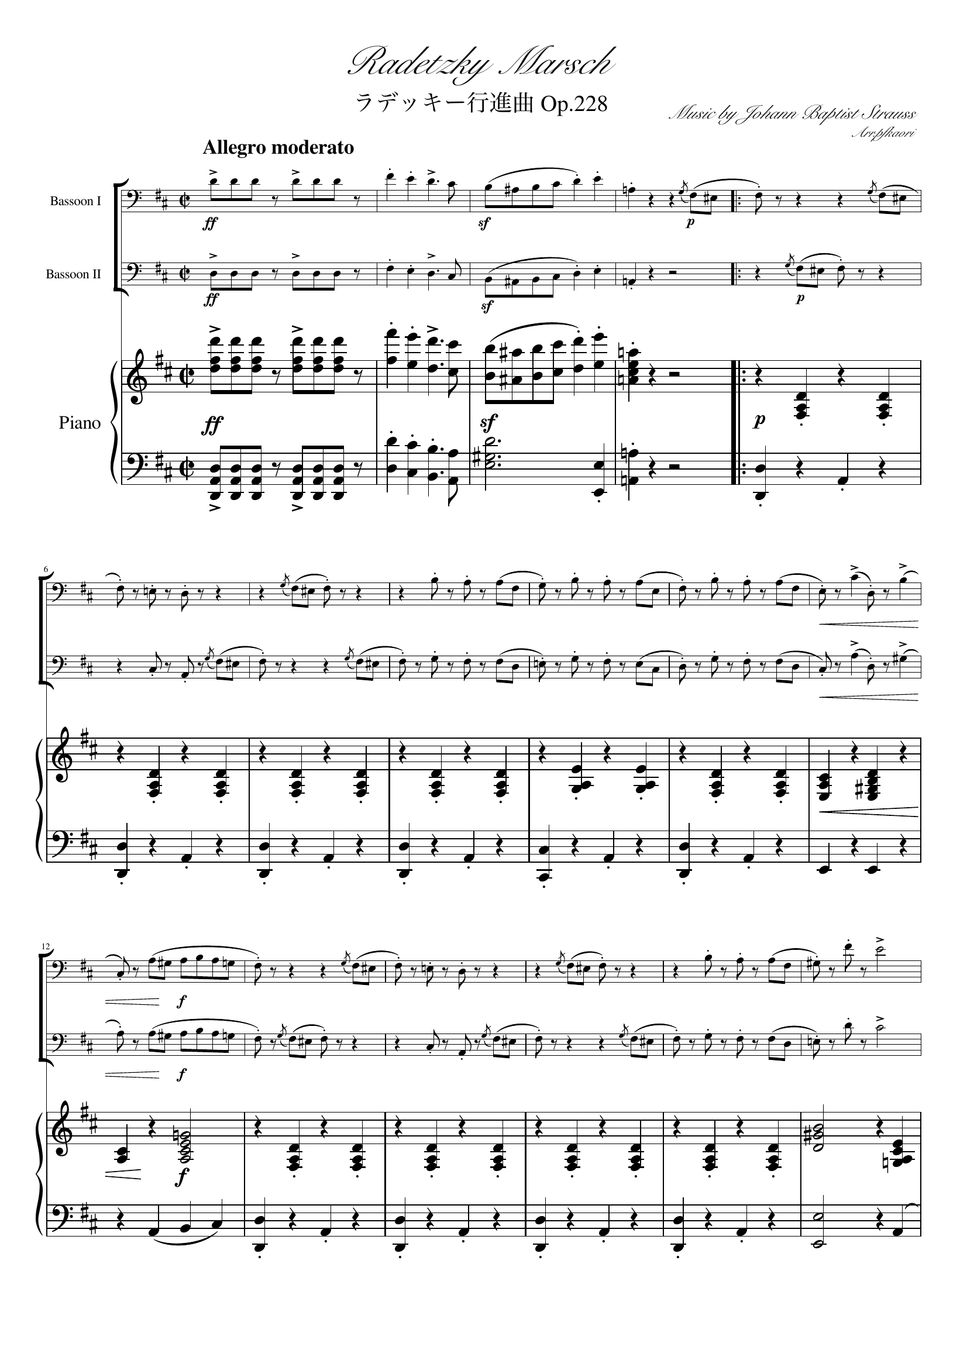 ヨハンシュトラウス1世 - ラデッキー行進曲 (D・ピアノトリオ/ファゴットデュオ) by pfkaori